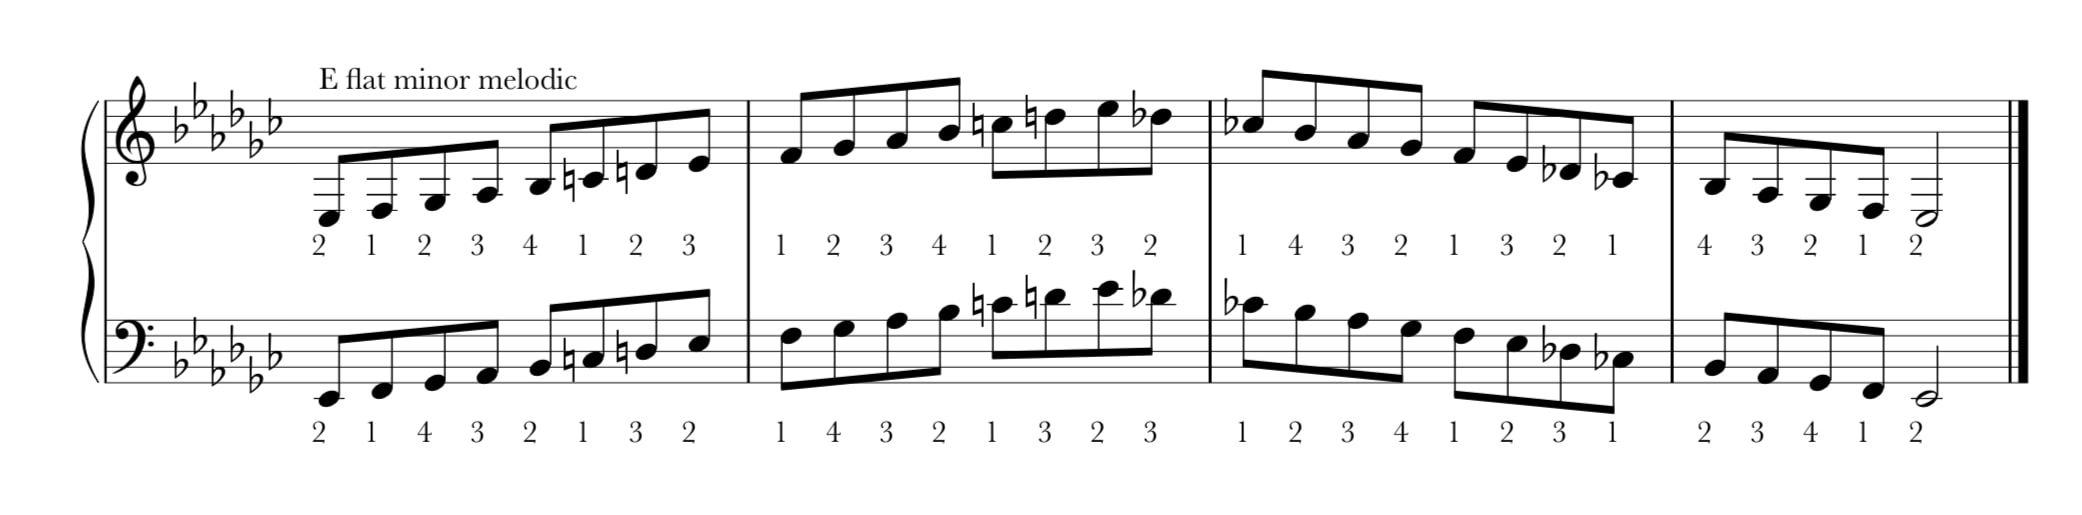 E flat melodic minor scale